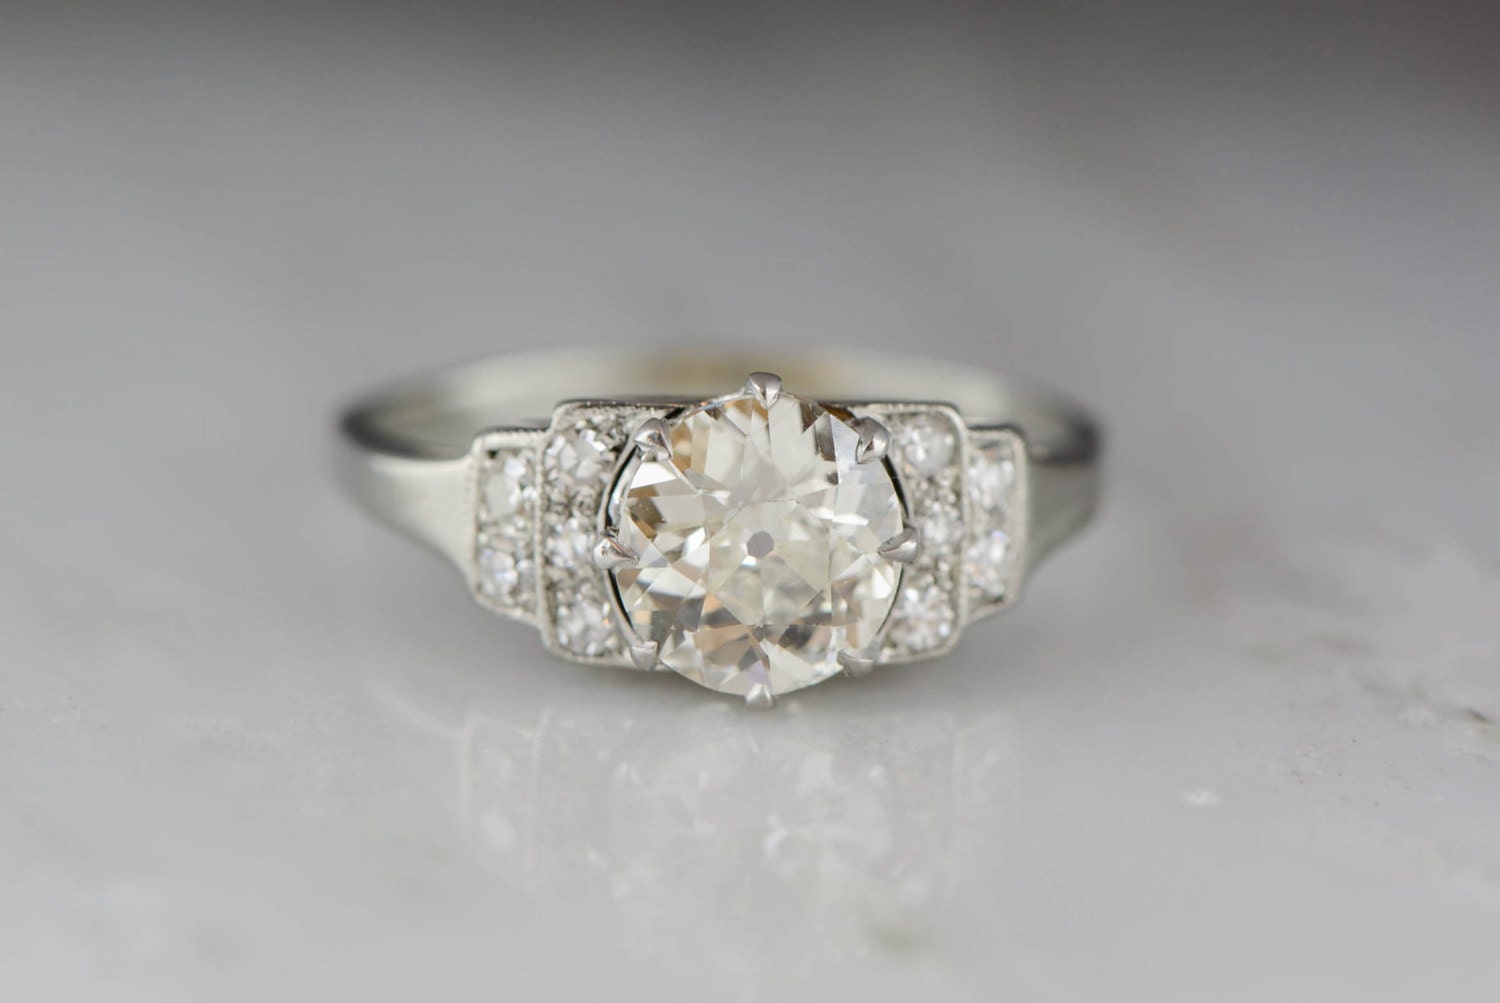 Antique Platinum Art Deco Engagement Ring with 1.30 Carat